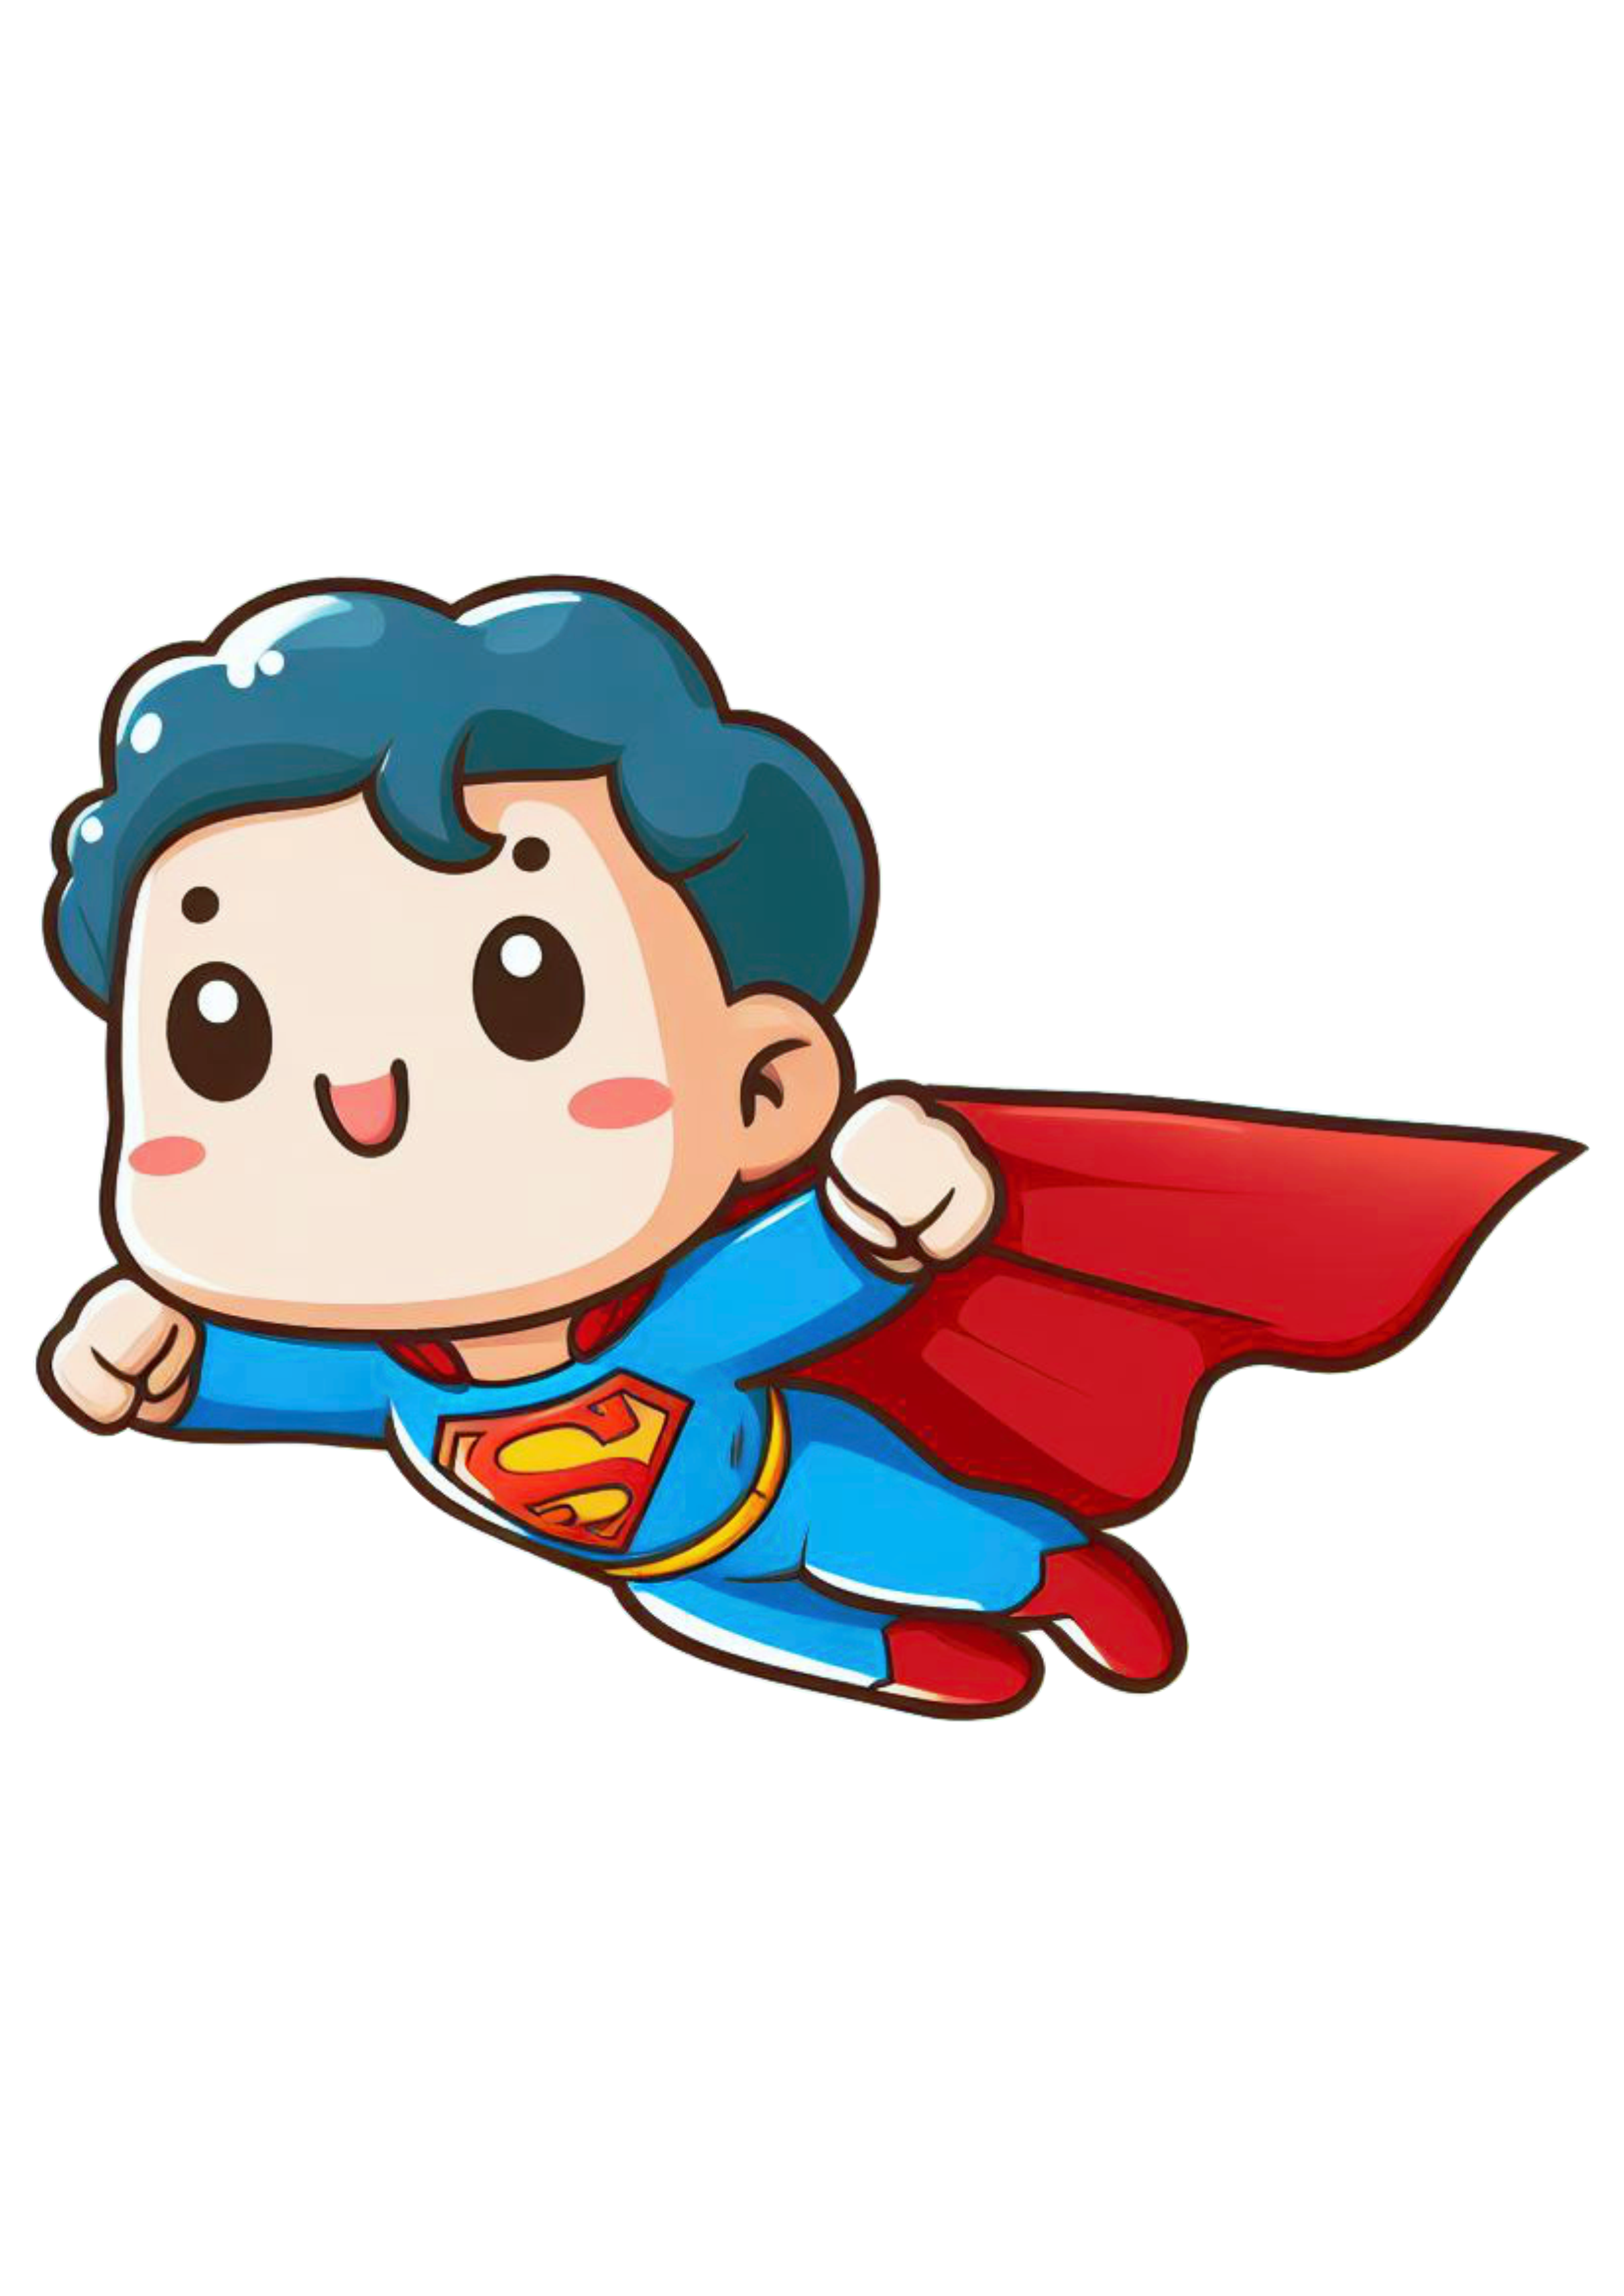 Super homem voando chibi fofinho cute superman heroi fantasia dc universe ilustração desenho simples png